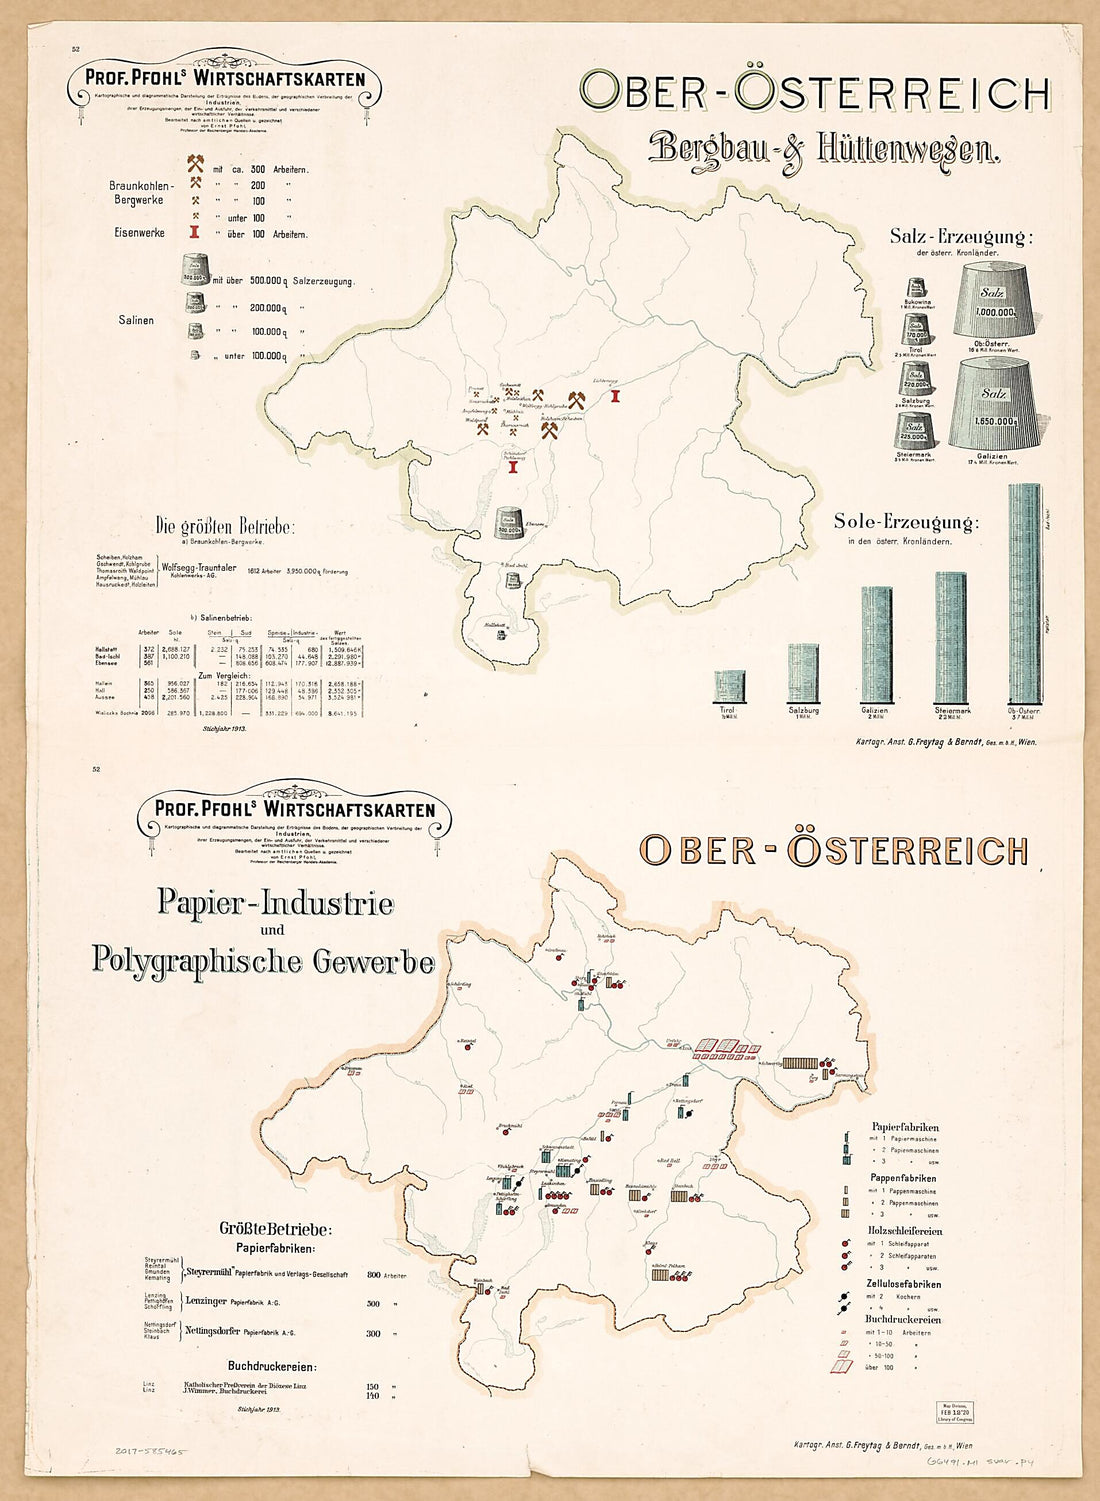 This old map of Ober Osterrreich Bergbau &amp; Huttenwesen; Ober Osterrreich Papier-Industrie Und Polygraphische Gewerbe from Prof. Pfohls Wirtschaftskarten from 1913 was created by Ernst Pfohl in 1913